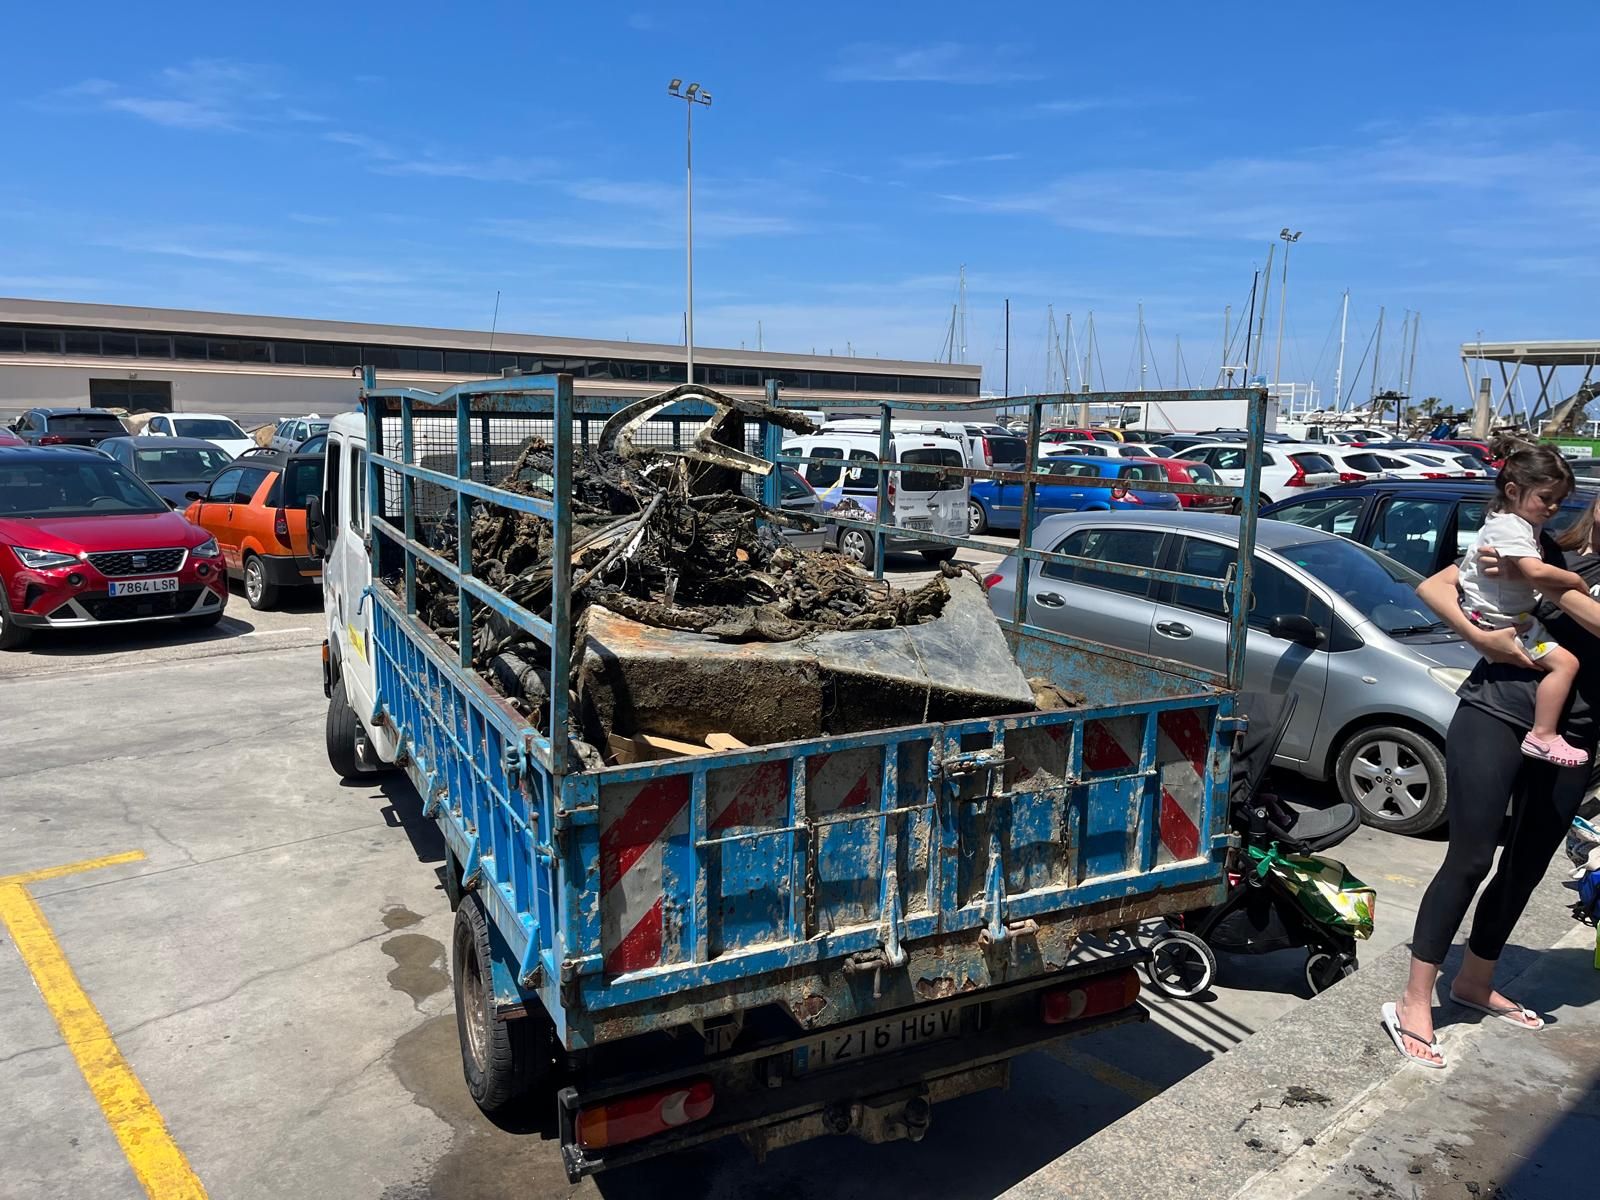 Las imágenes de la limpieza marina del puerto de Dénia